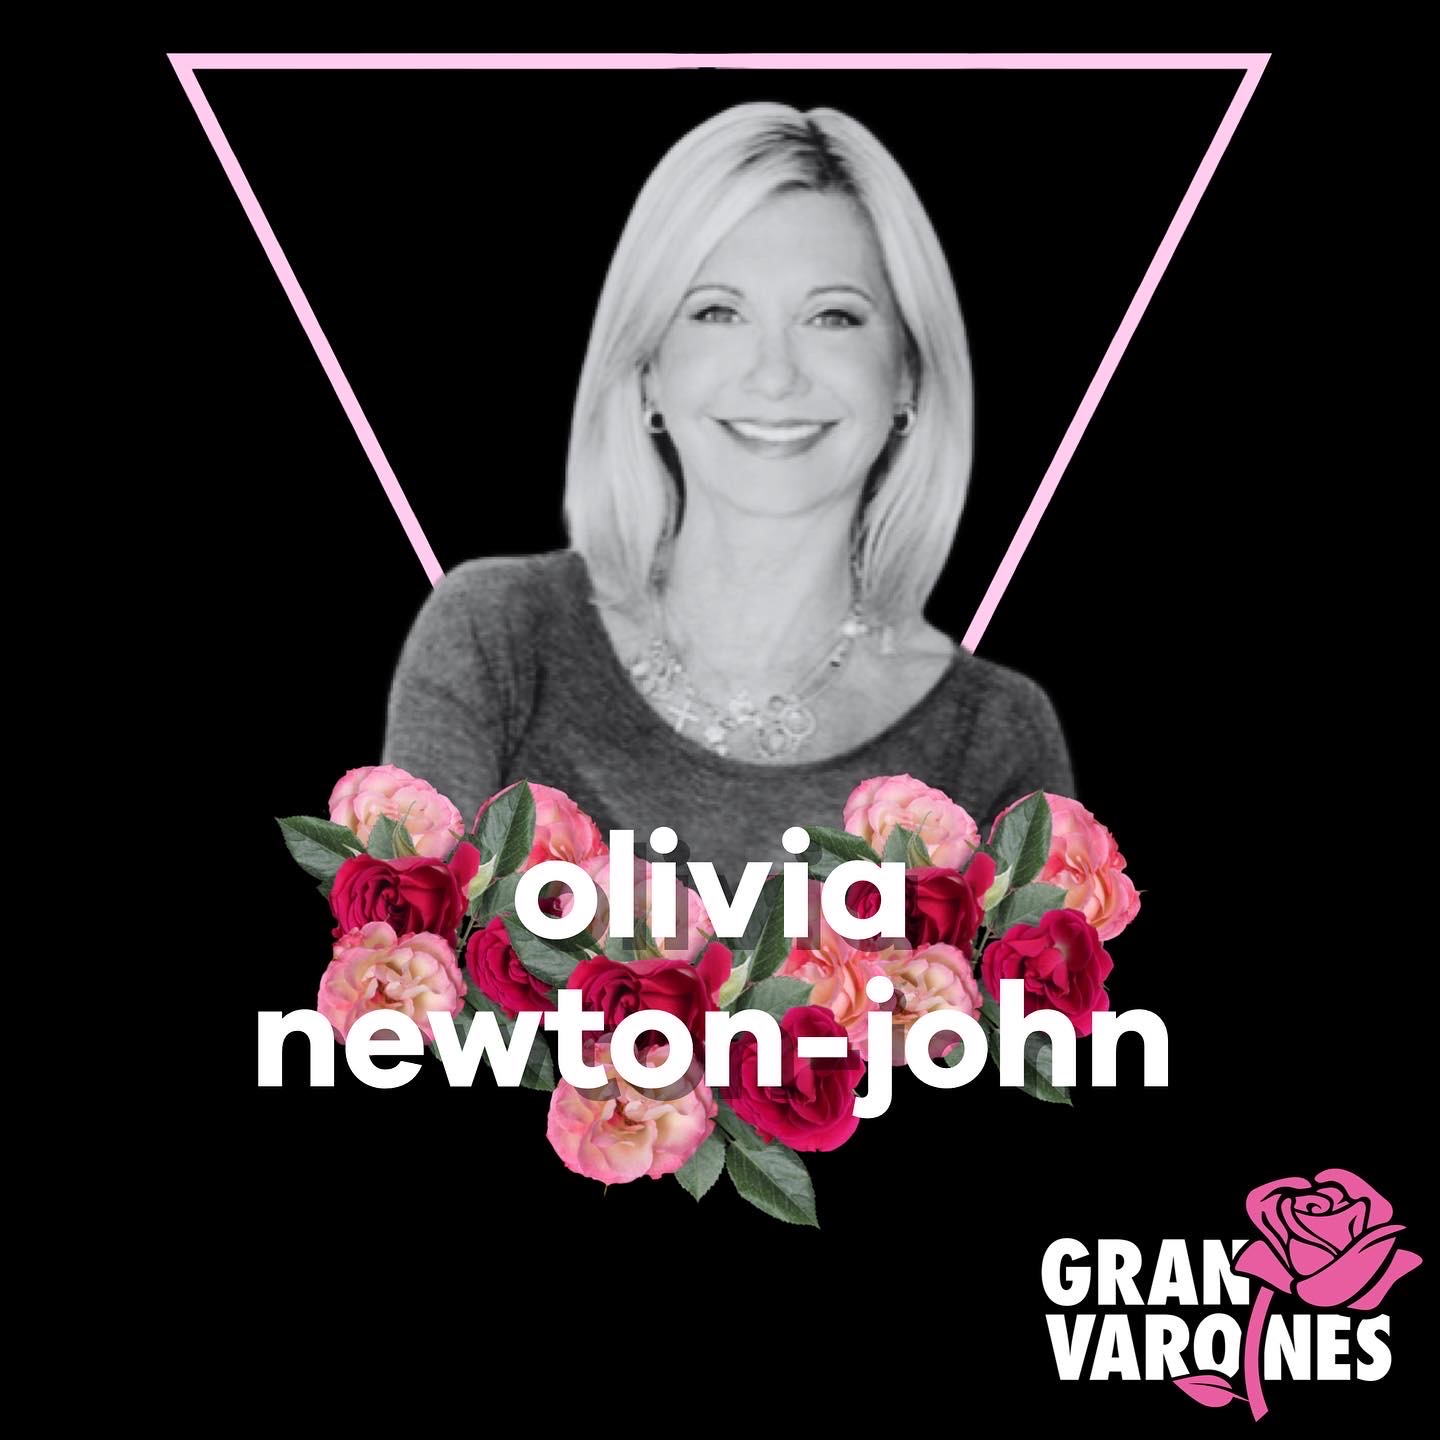 OLIVIA NEWTON-JOHN